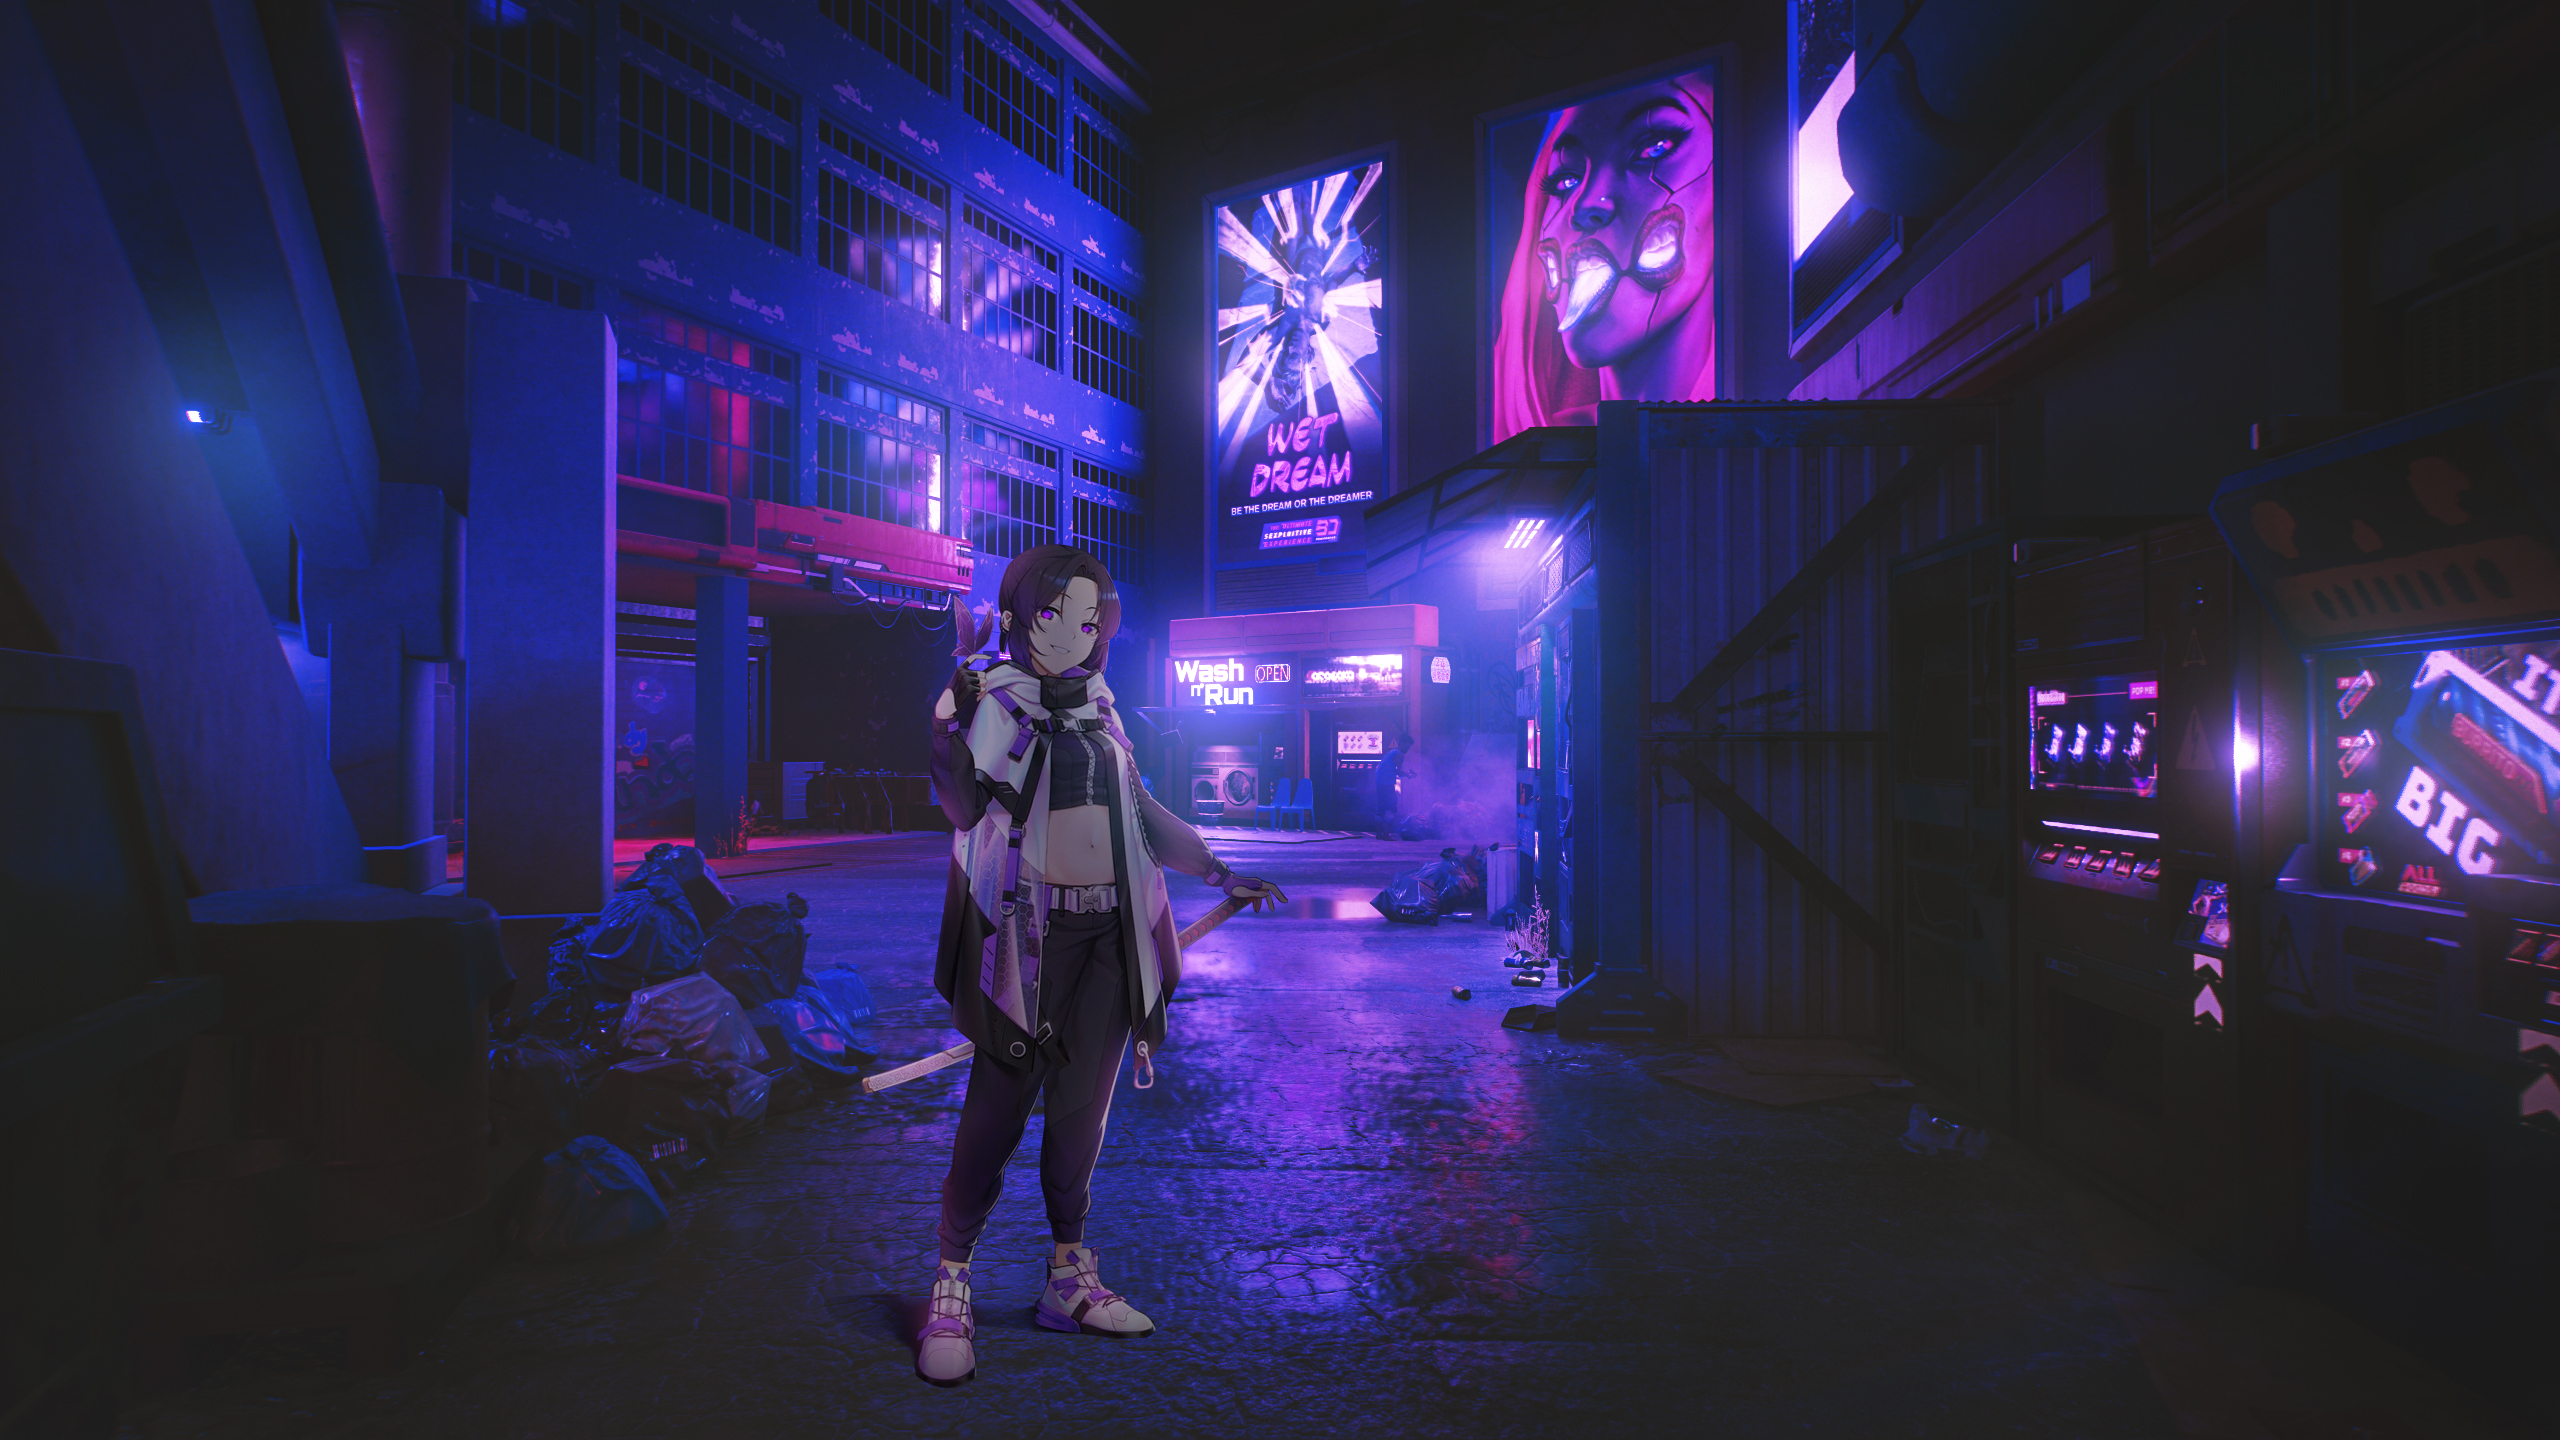 Shinobu Urusei Yatsura Kimetsu No Yaiba Neon Cyberpunk Street Anime Anime Girls Purple Background Cy 2560x1440